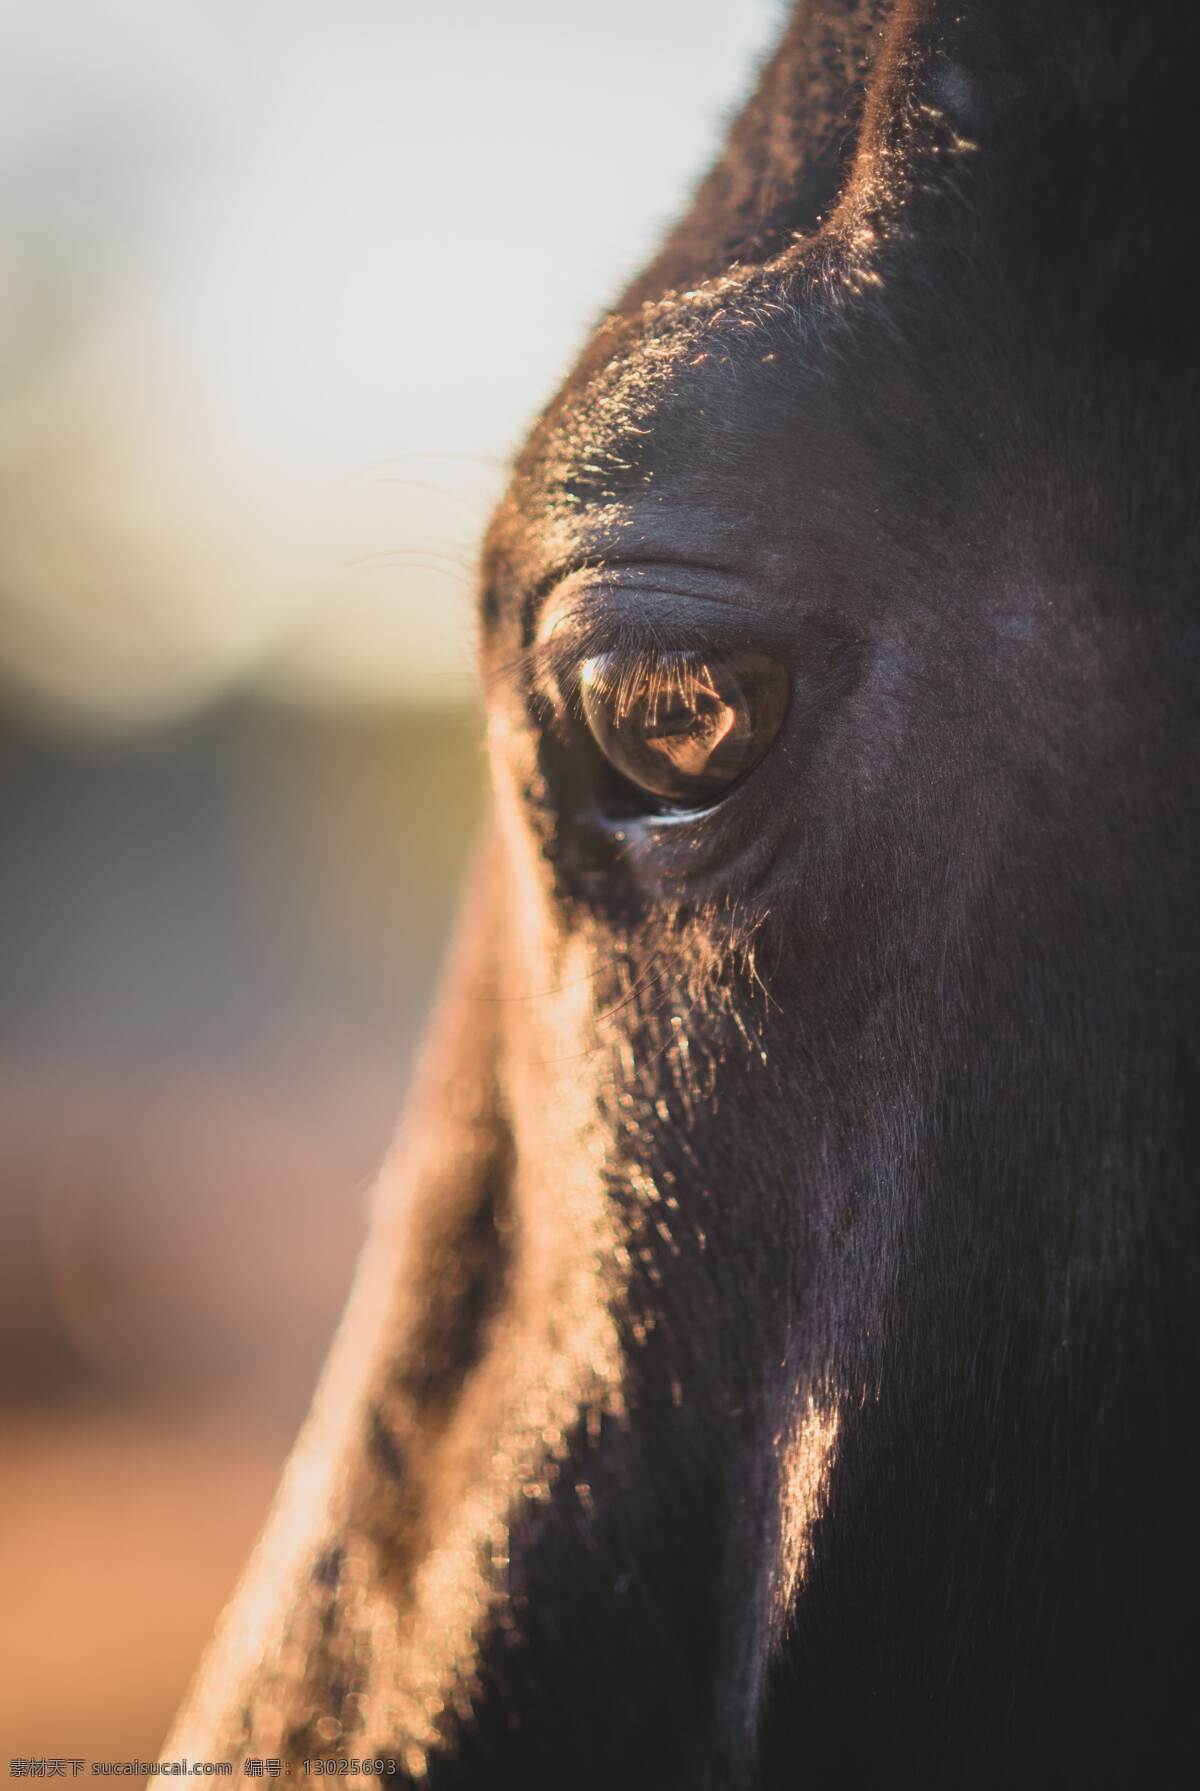 马的眼睛 马 眼睛 马眼 小马 动物 哺乳动物 生物世界 家禽家畜